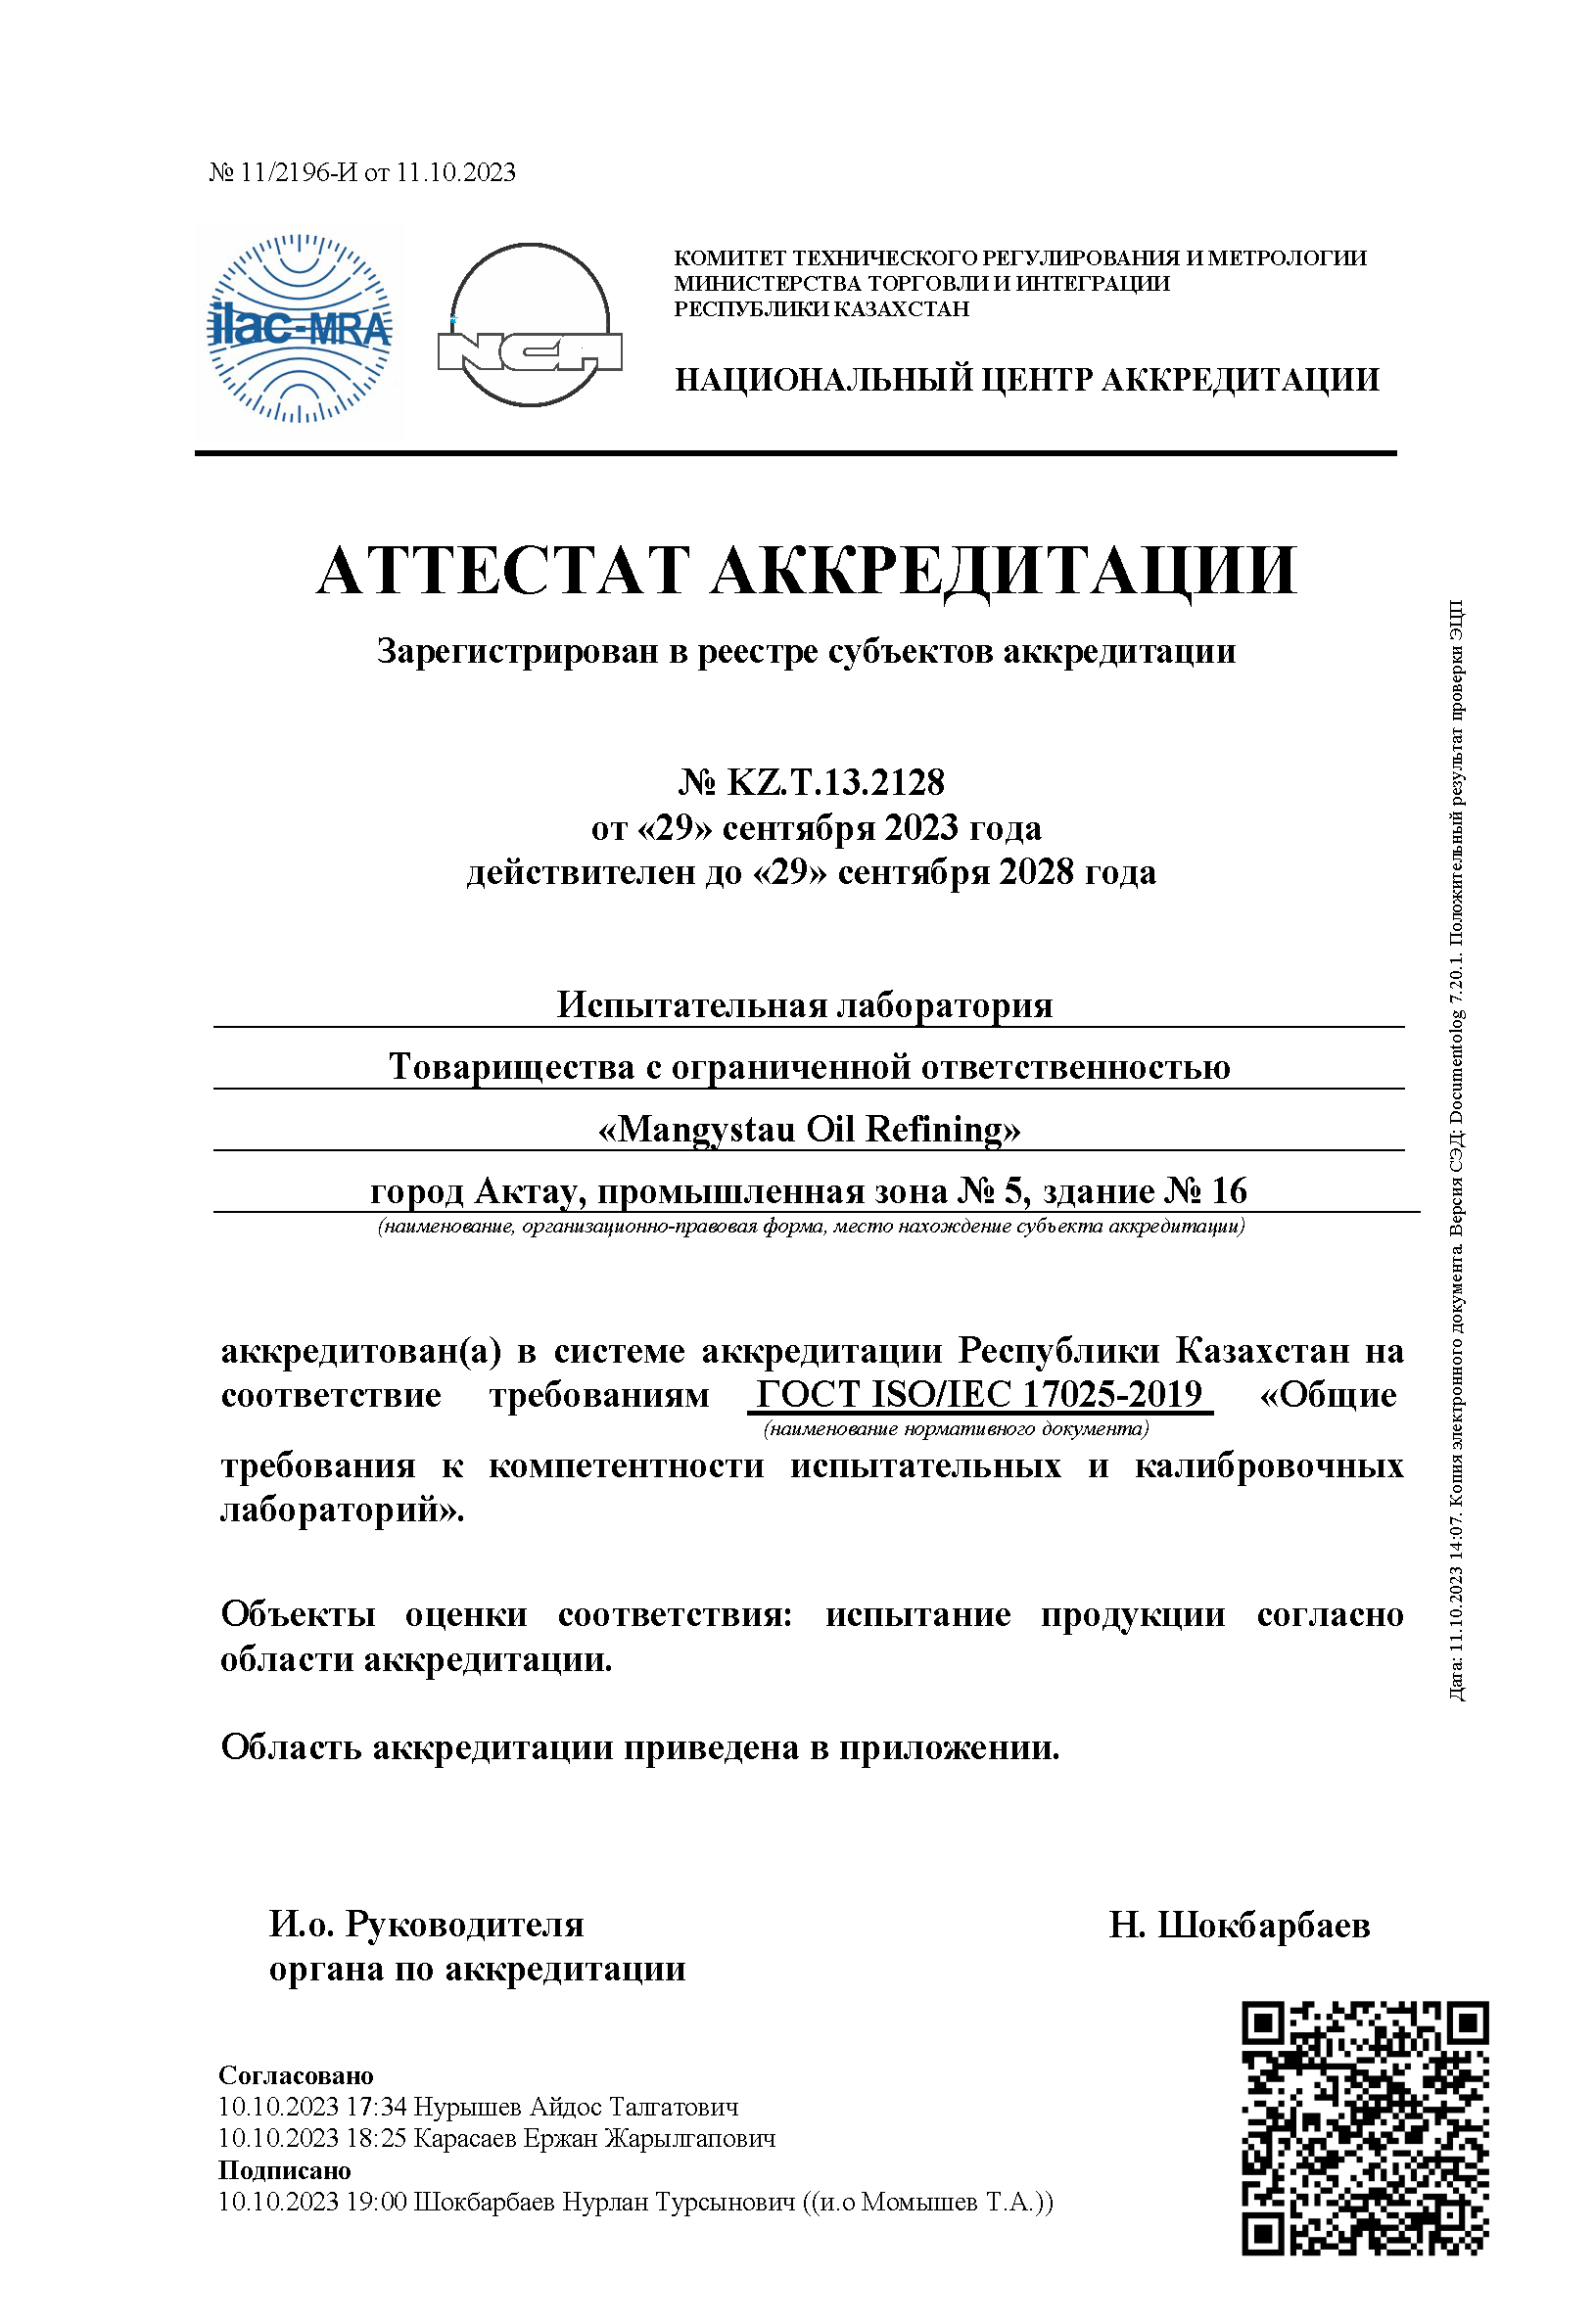 Аттестат аккредитации от 29.09.2023 г. рус измененный png